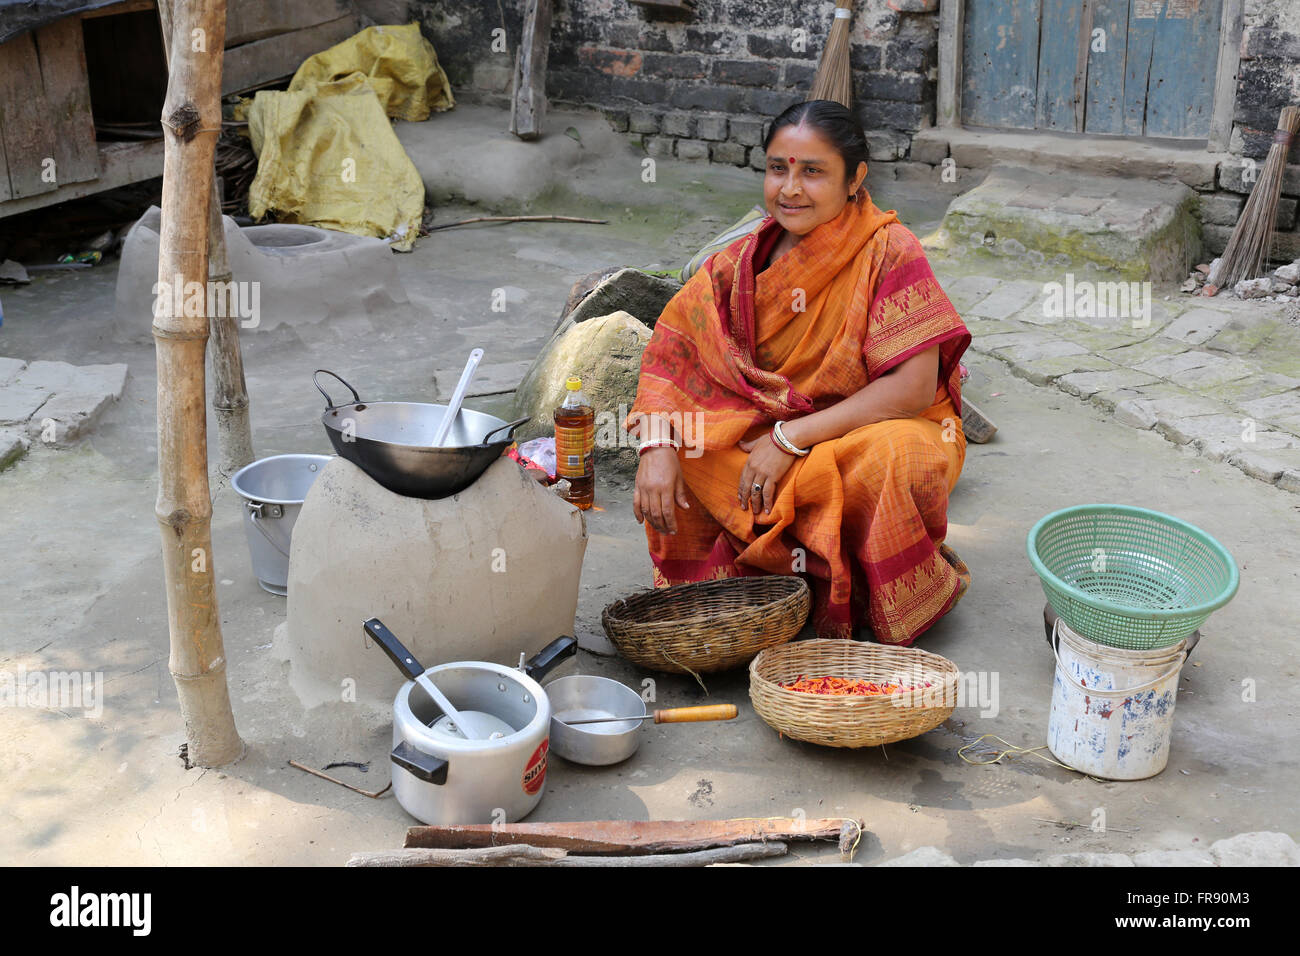 Traditionelle Art der Zubereitung von Essen am offenen Feuer in der alten Küche in einem Dorf, Kumrokhali, Westbengalen, Indien Stockfoto